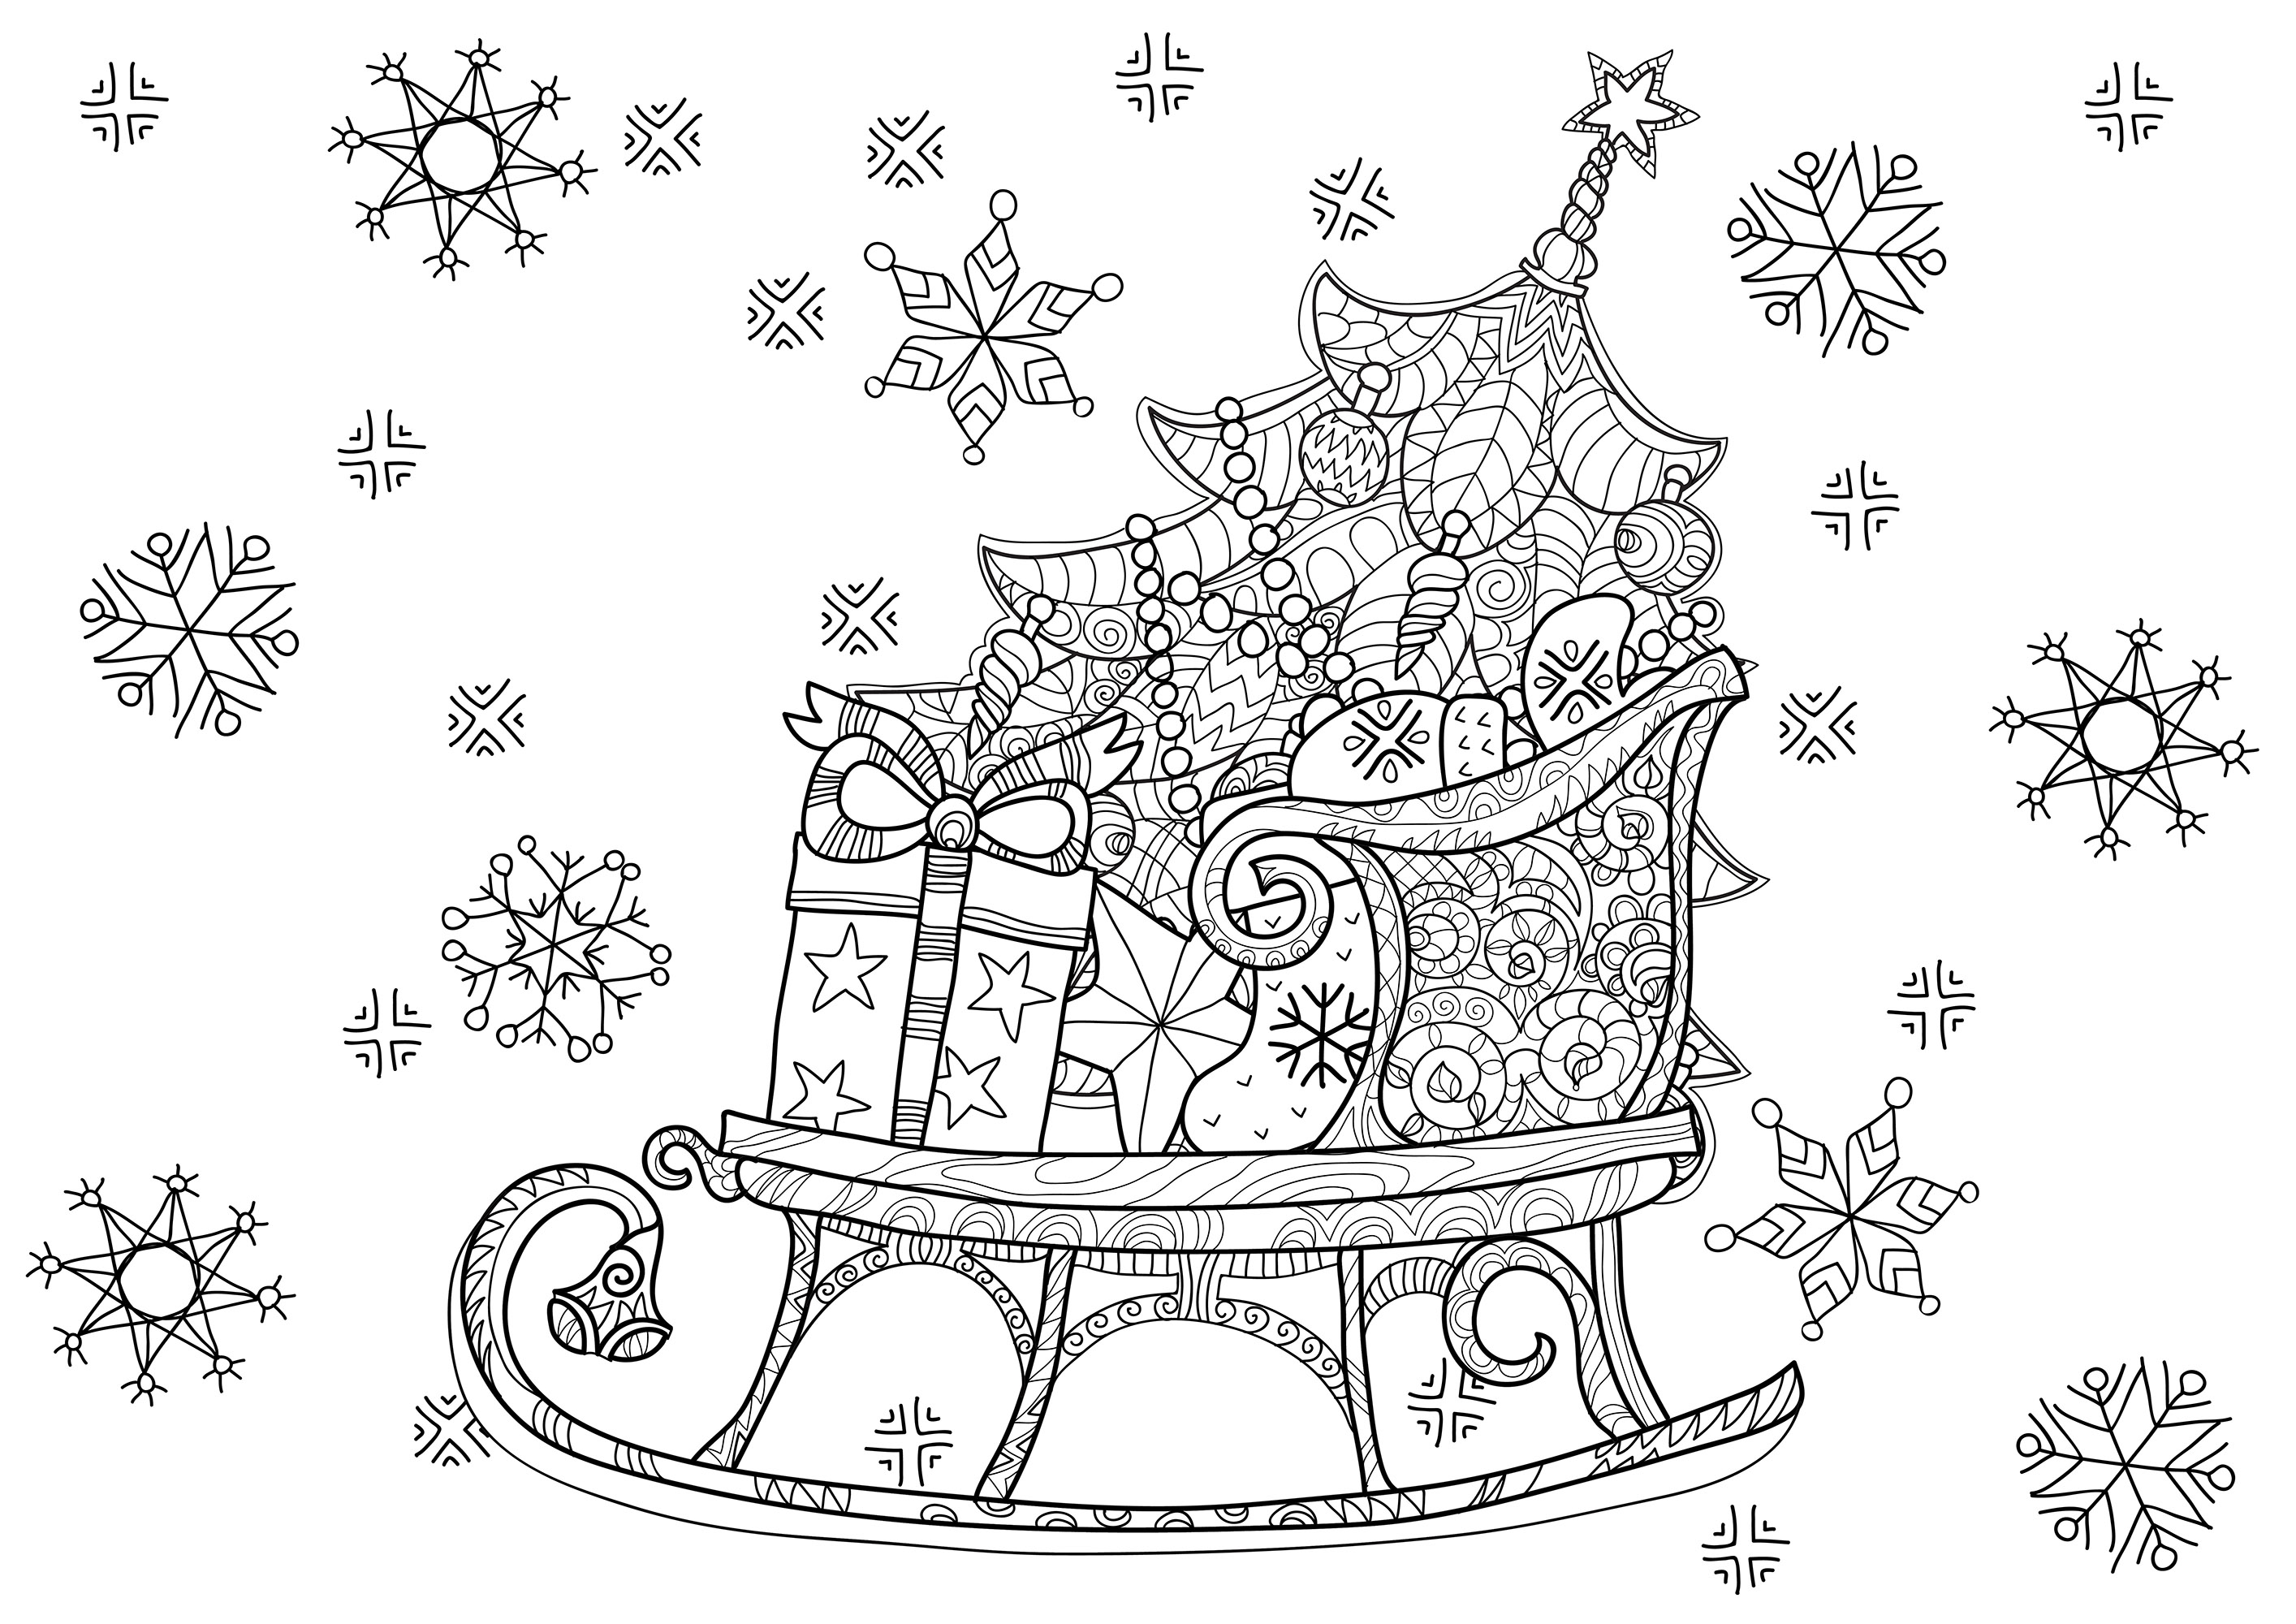 O trenó do Pai Natal cheio de presentes, também com uma árvore de Natal bonita e bem decorada, Fonte : 123rf   Artista : Yazzik